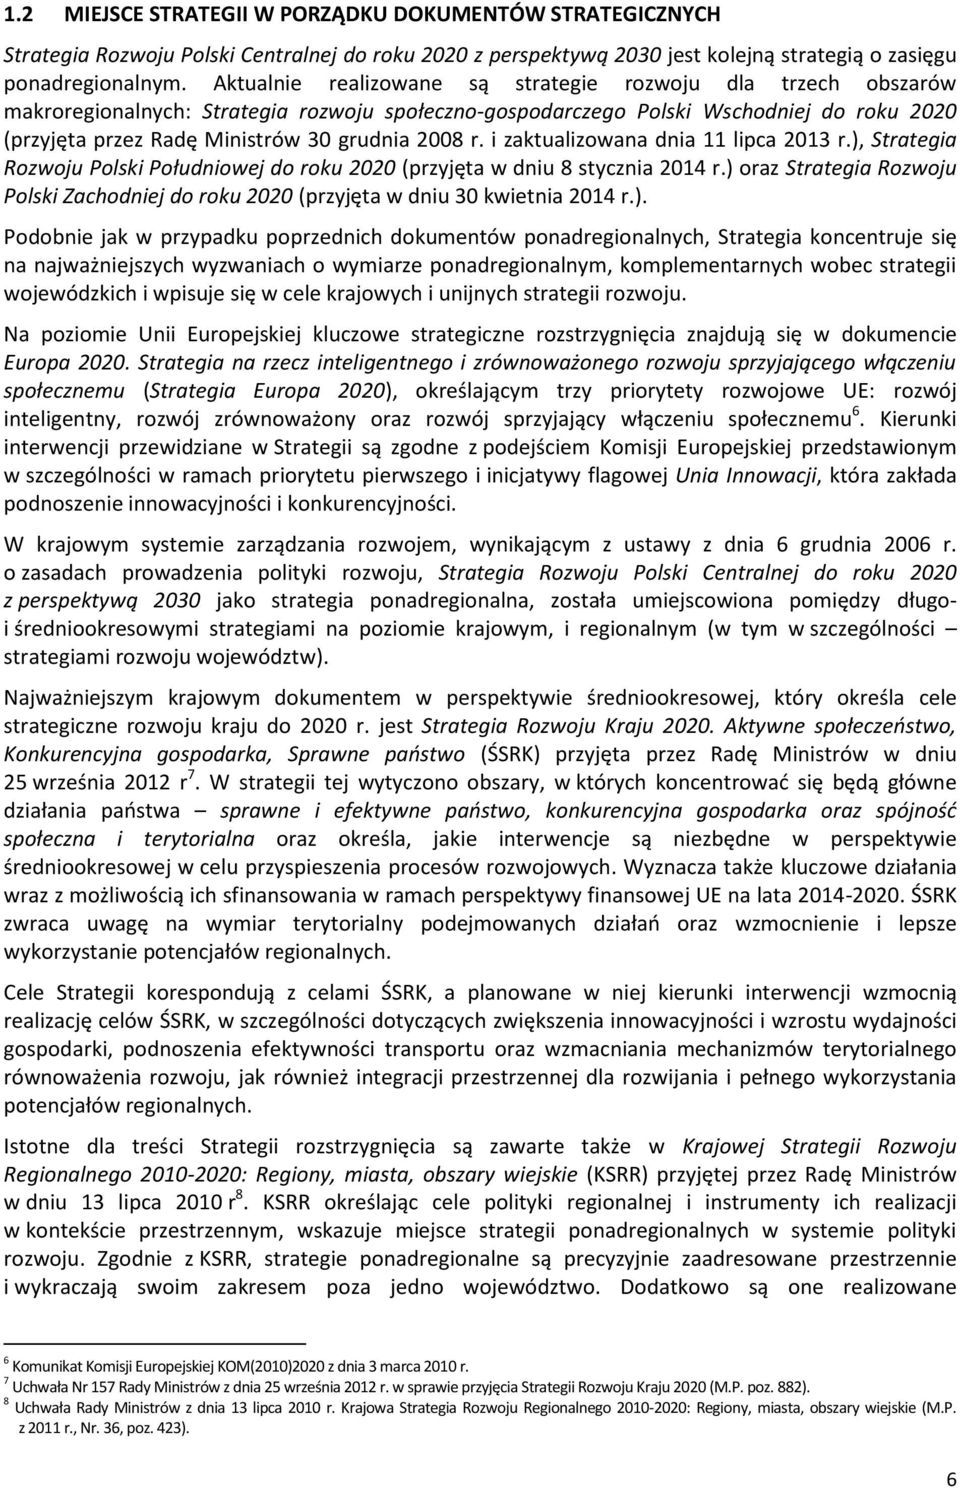 2008 r. i zaktualizowana dnia 11 lipca 2013 r.), Strategia Rozwoju Polski Południowej do roku 2020 (przyjęta w dniu 8 stycznia 2014 r.